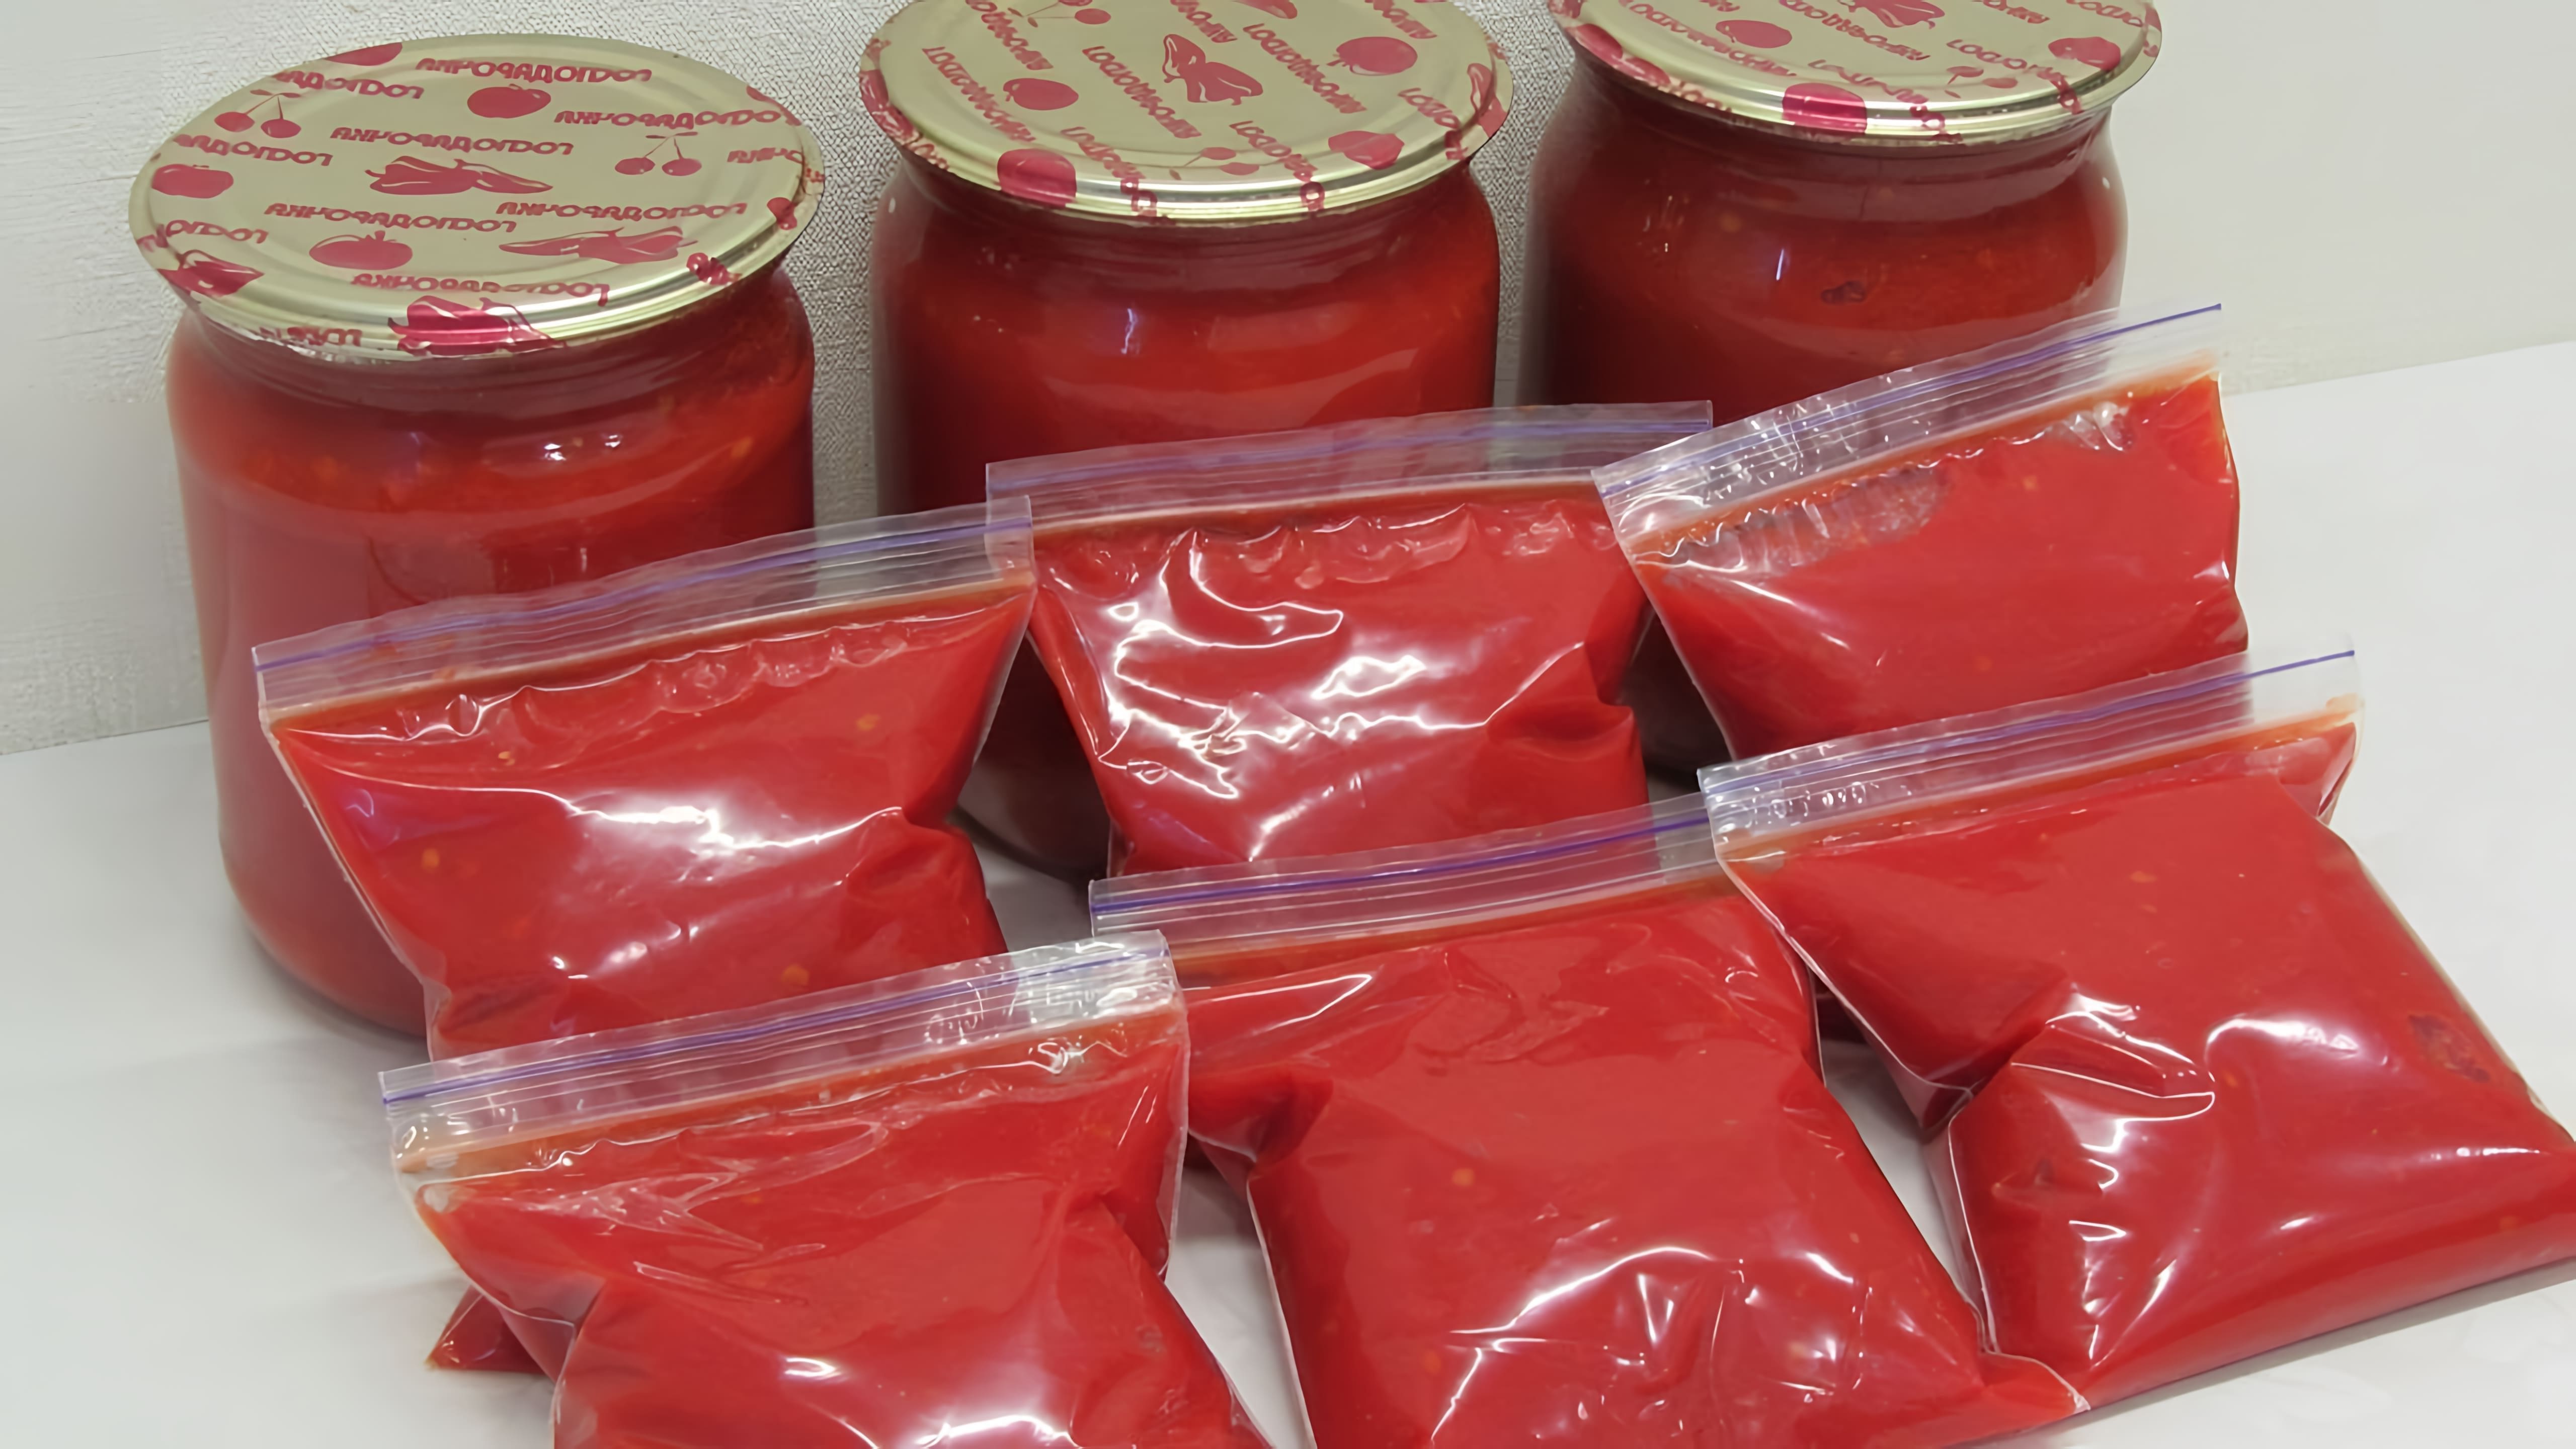 В этом видео показано, как приготовить густой домашний томат круглый год